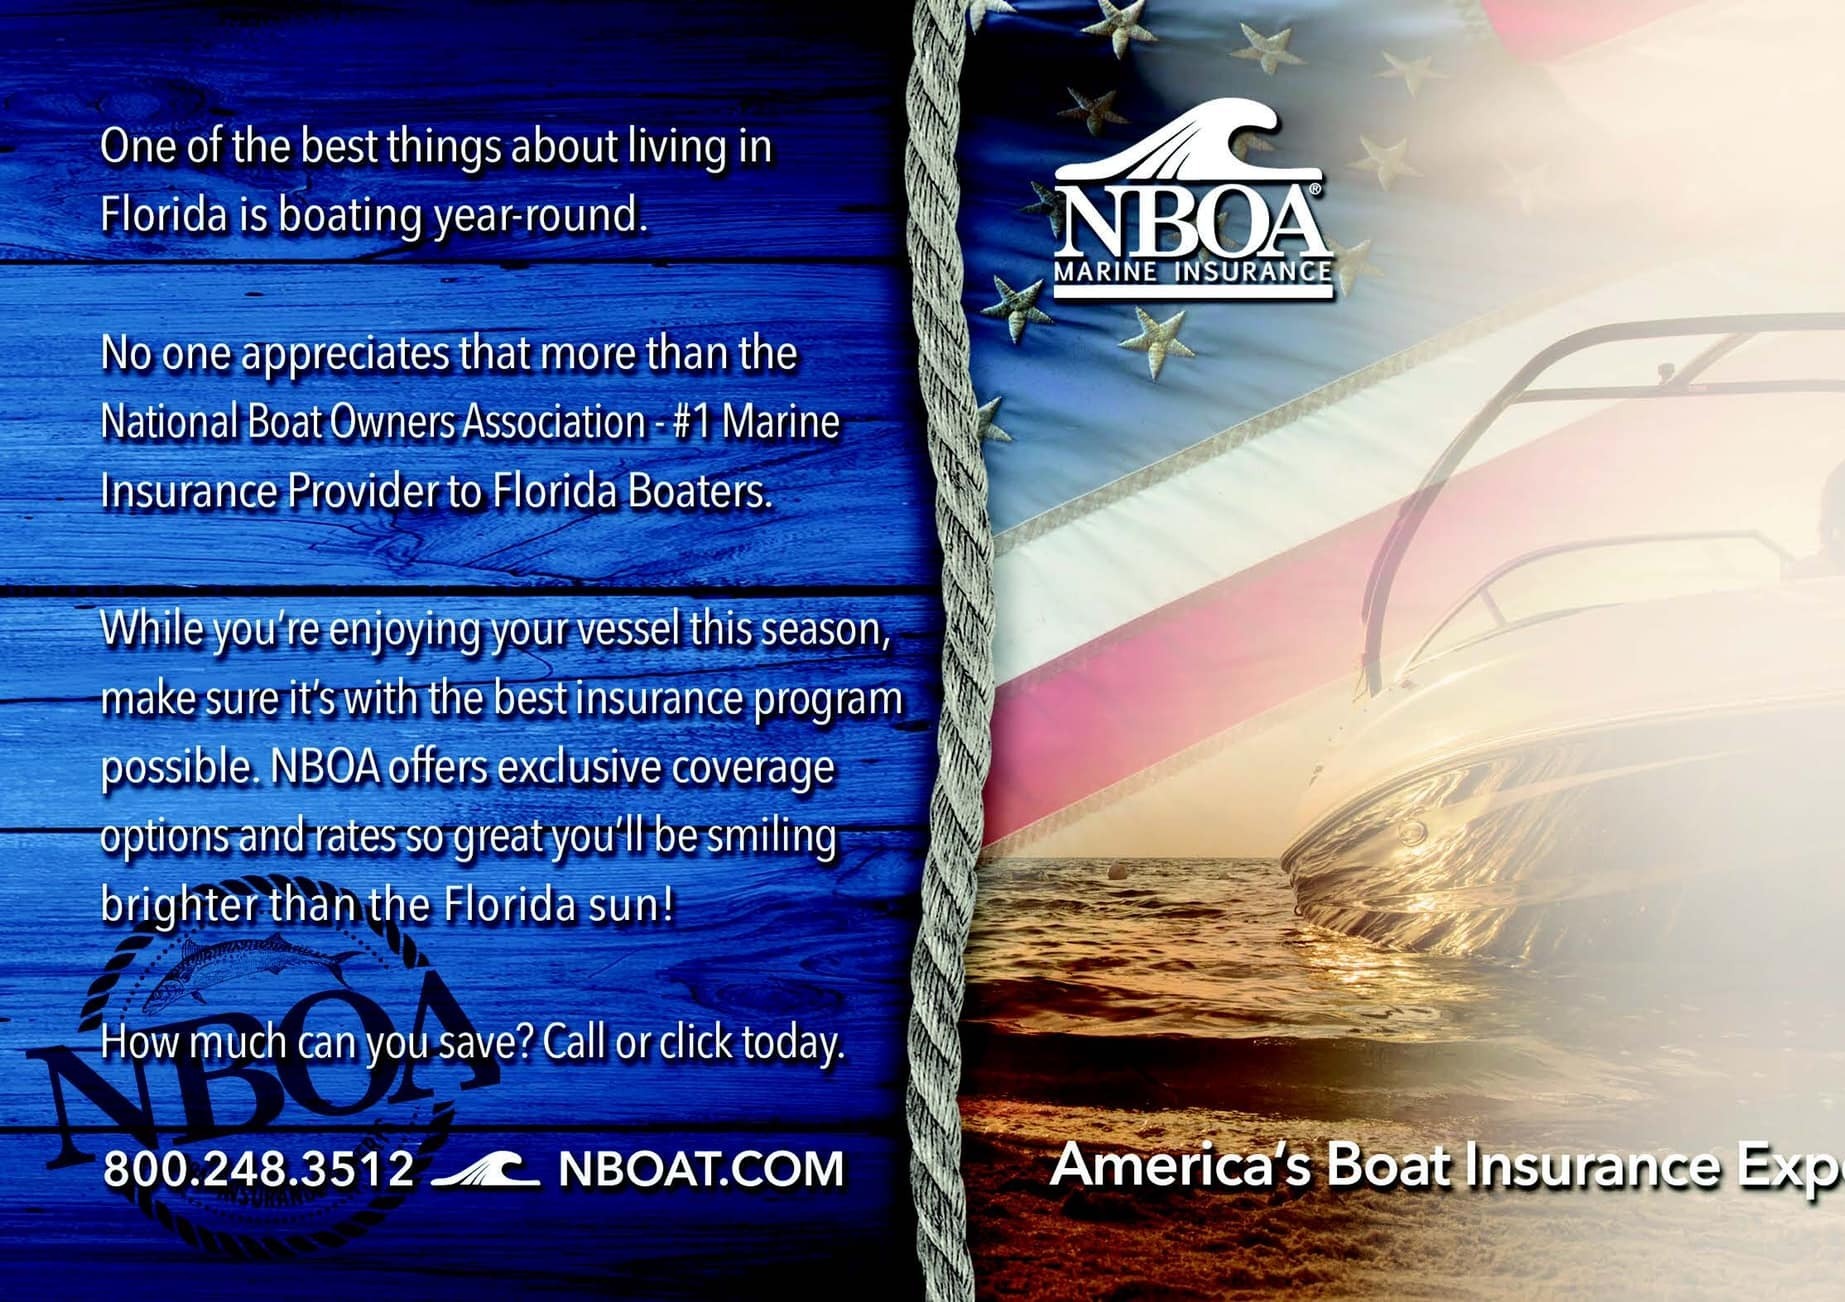 NBOA Marine Insurance